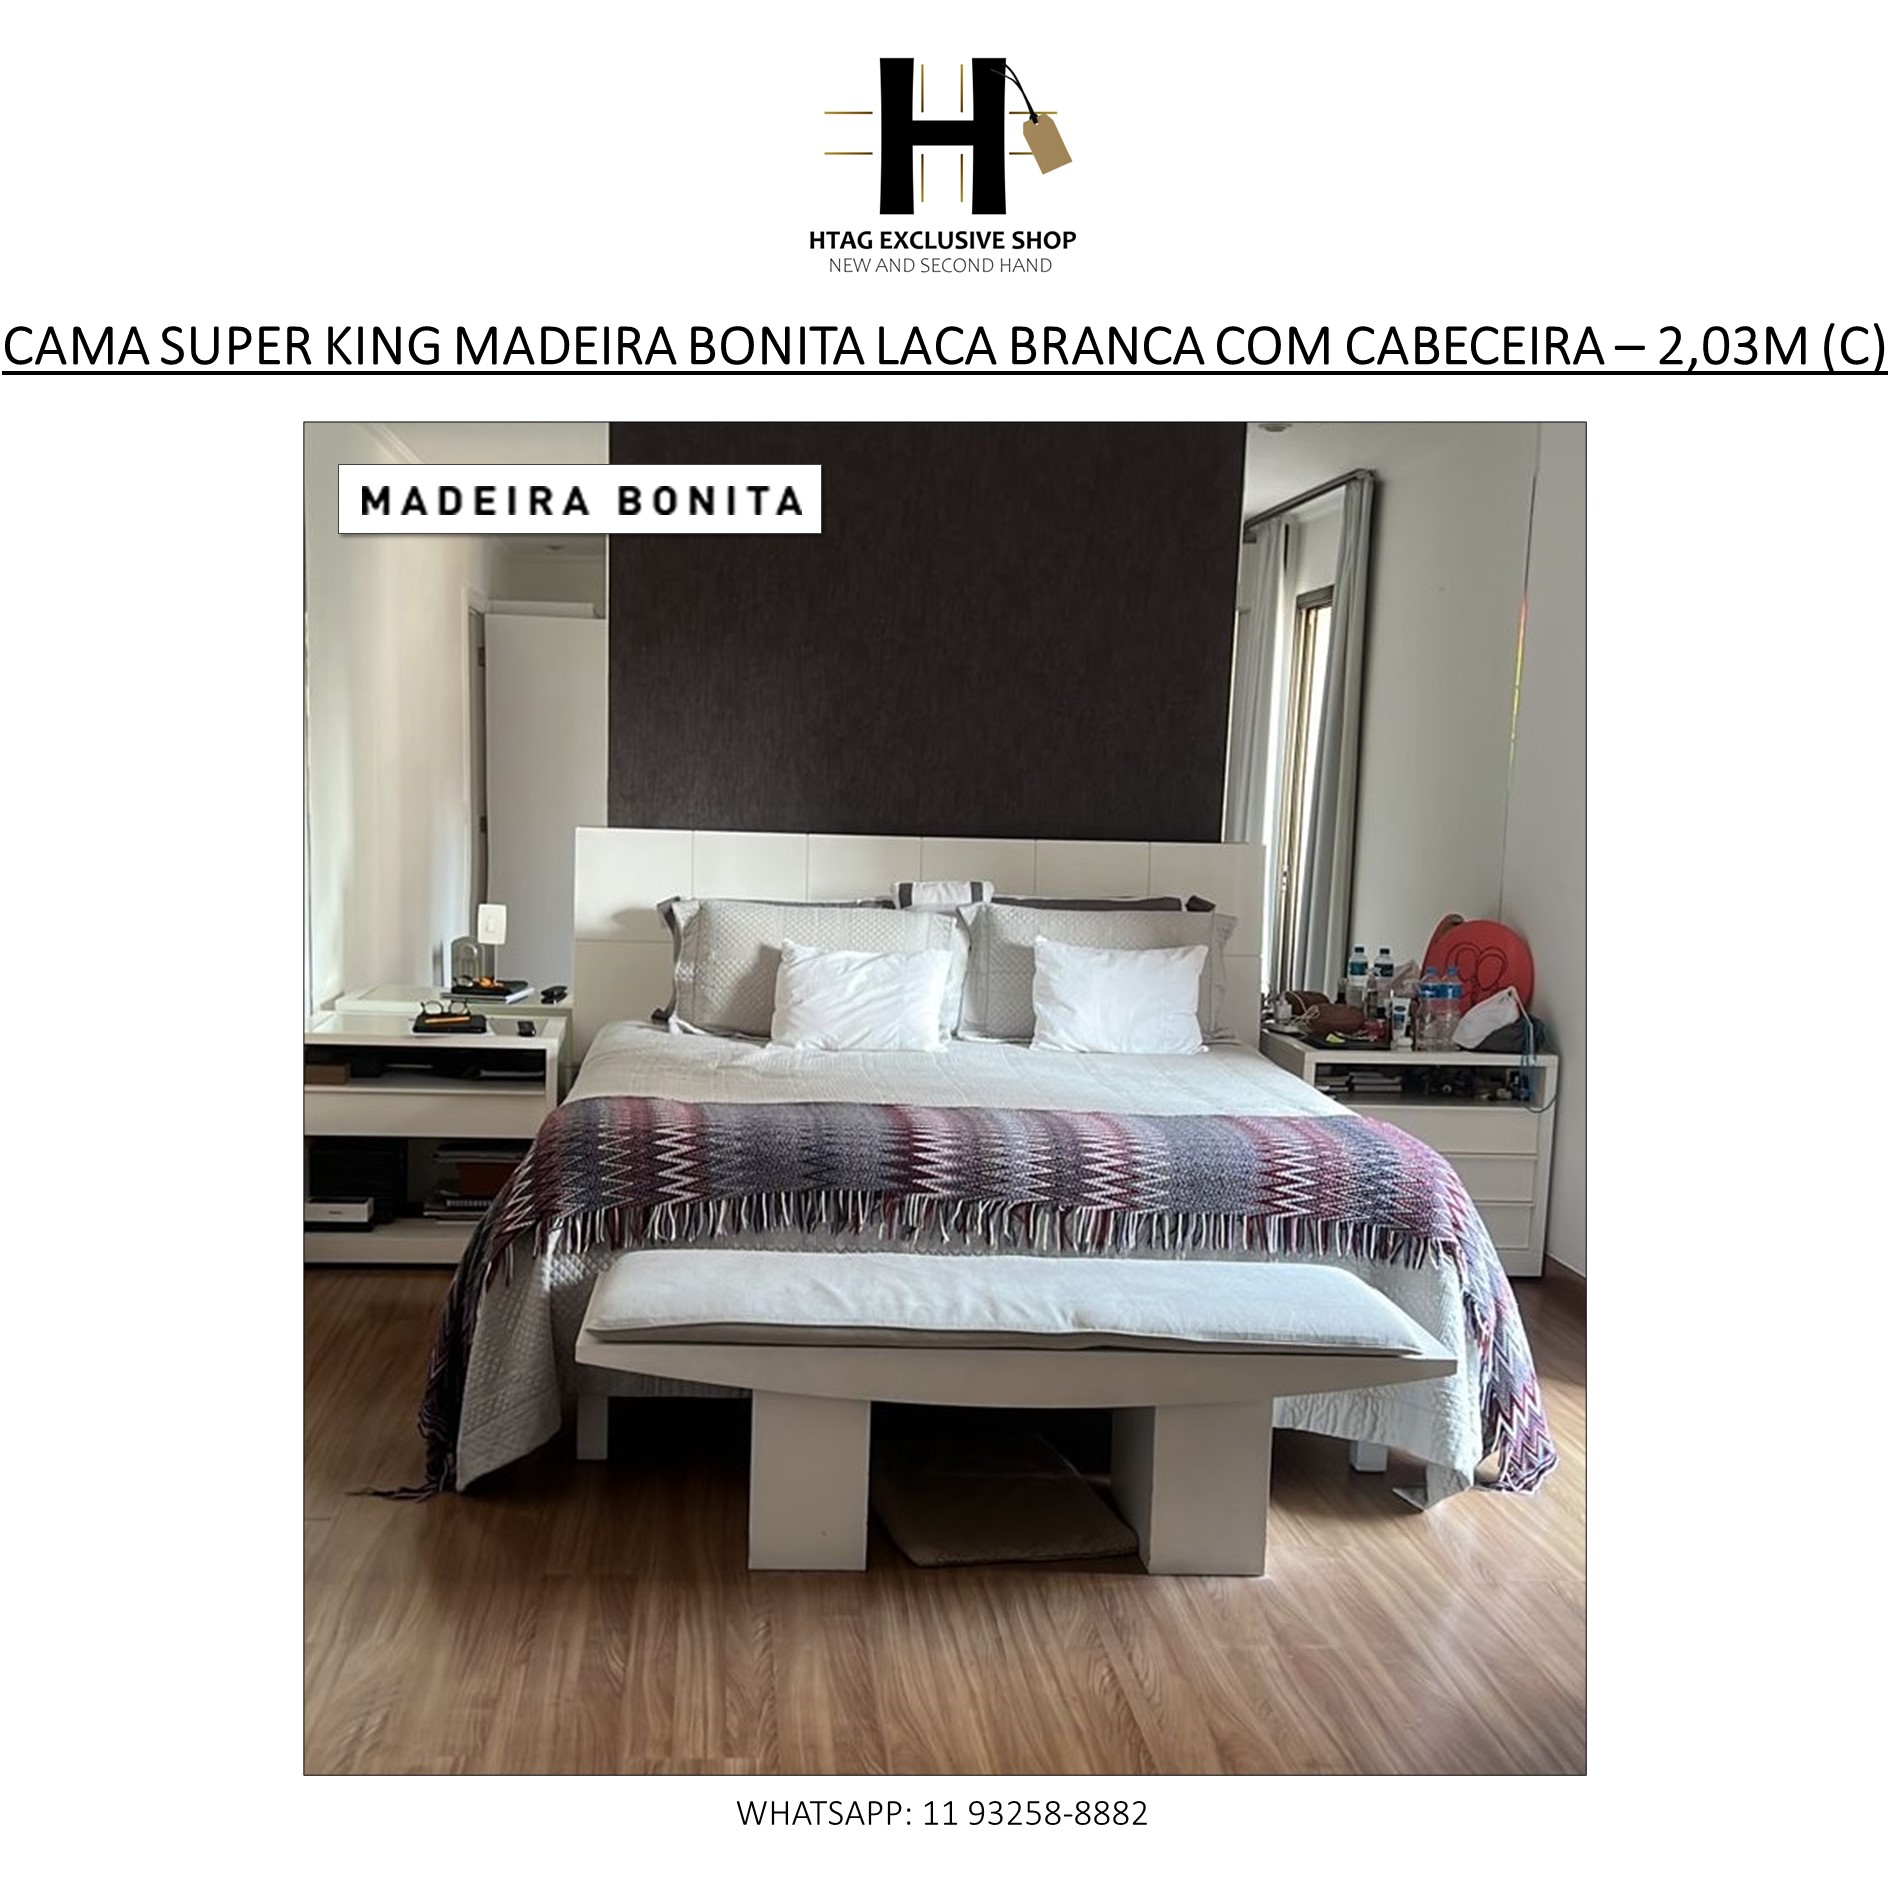 CAMA SUPER KING MADEIRA BONITA GABRIEL MONTEIRO COM CABECEIRA EM LACA -  HTAG EXCLUSIVE SHOP - New & Second Hand